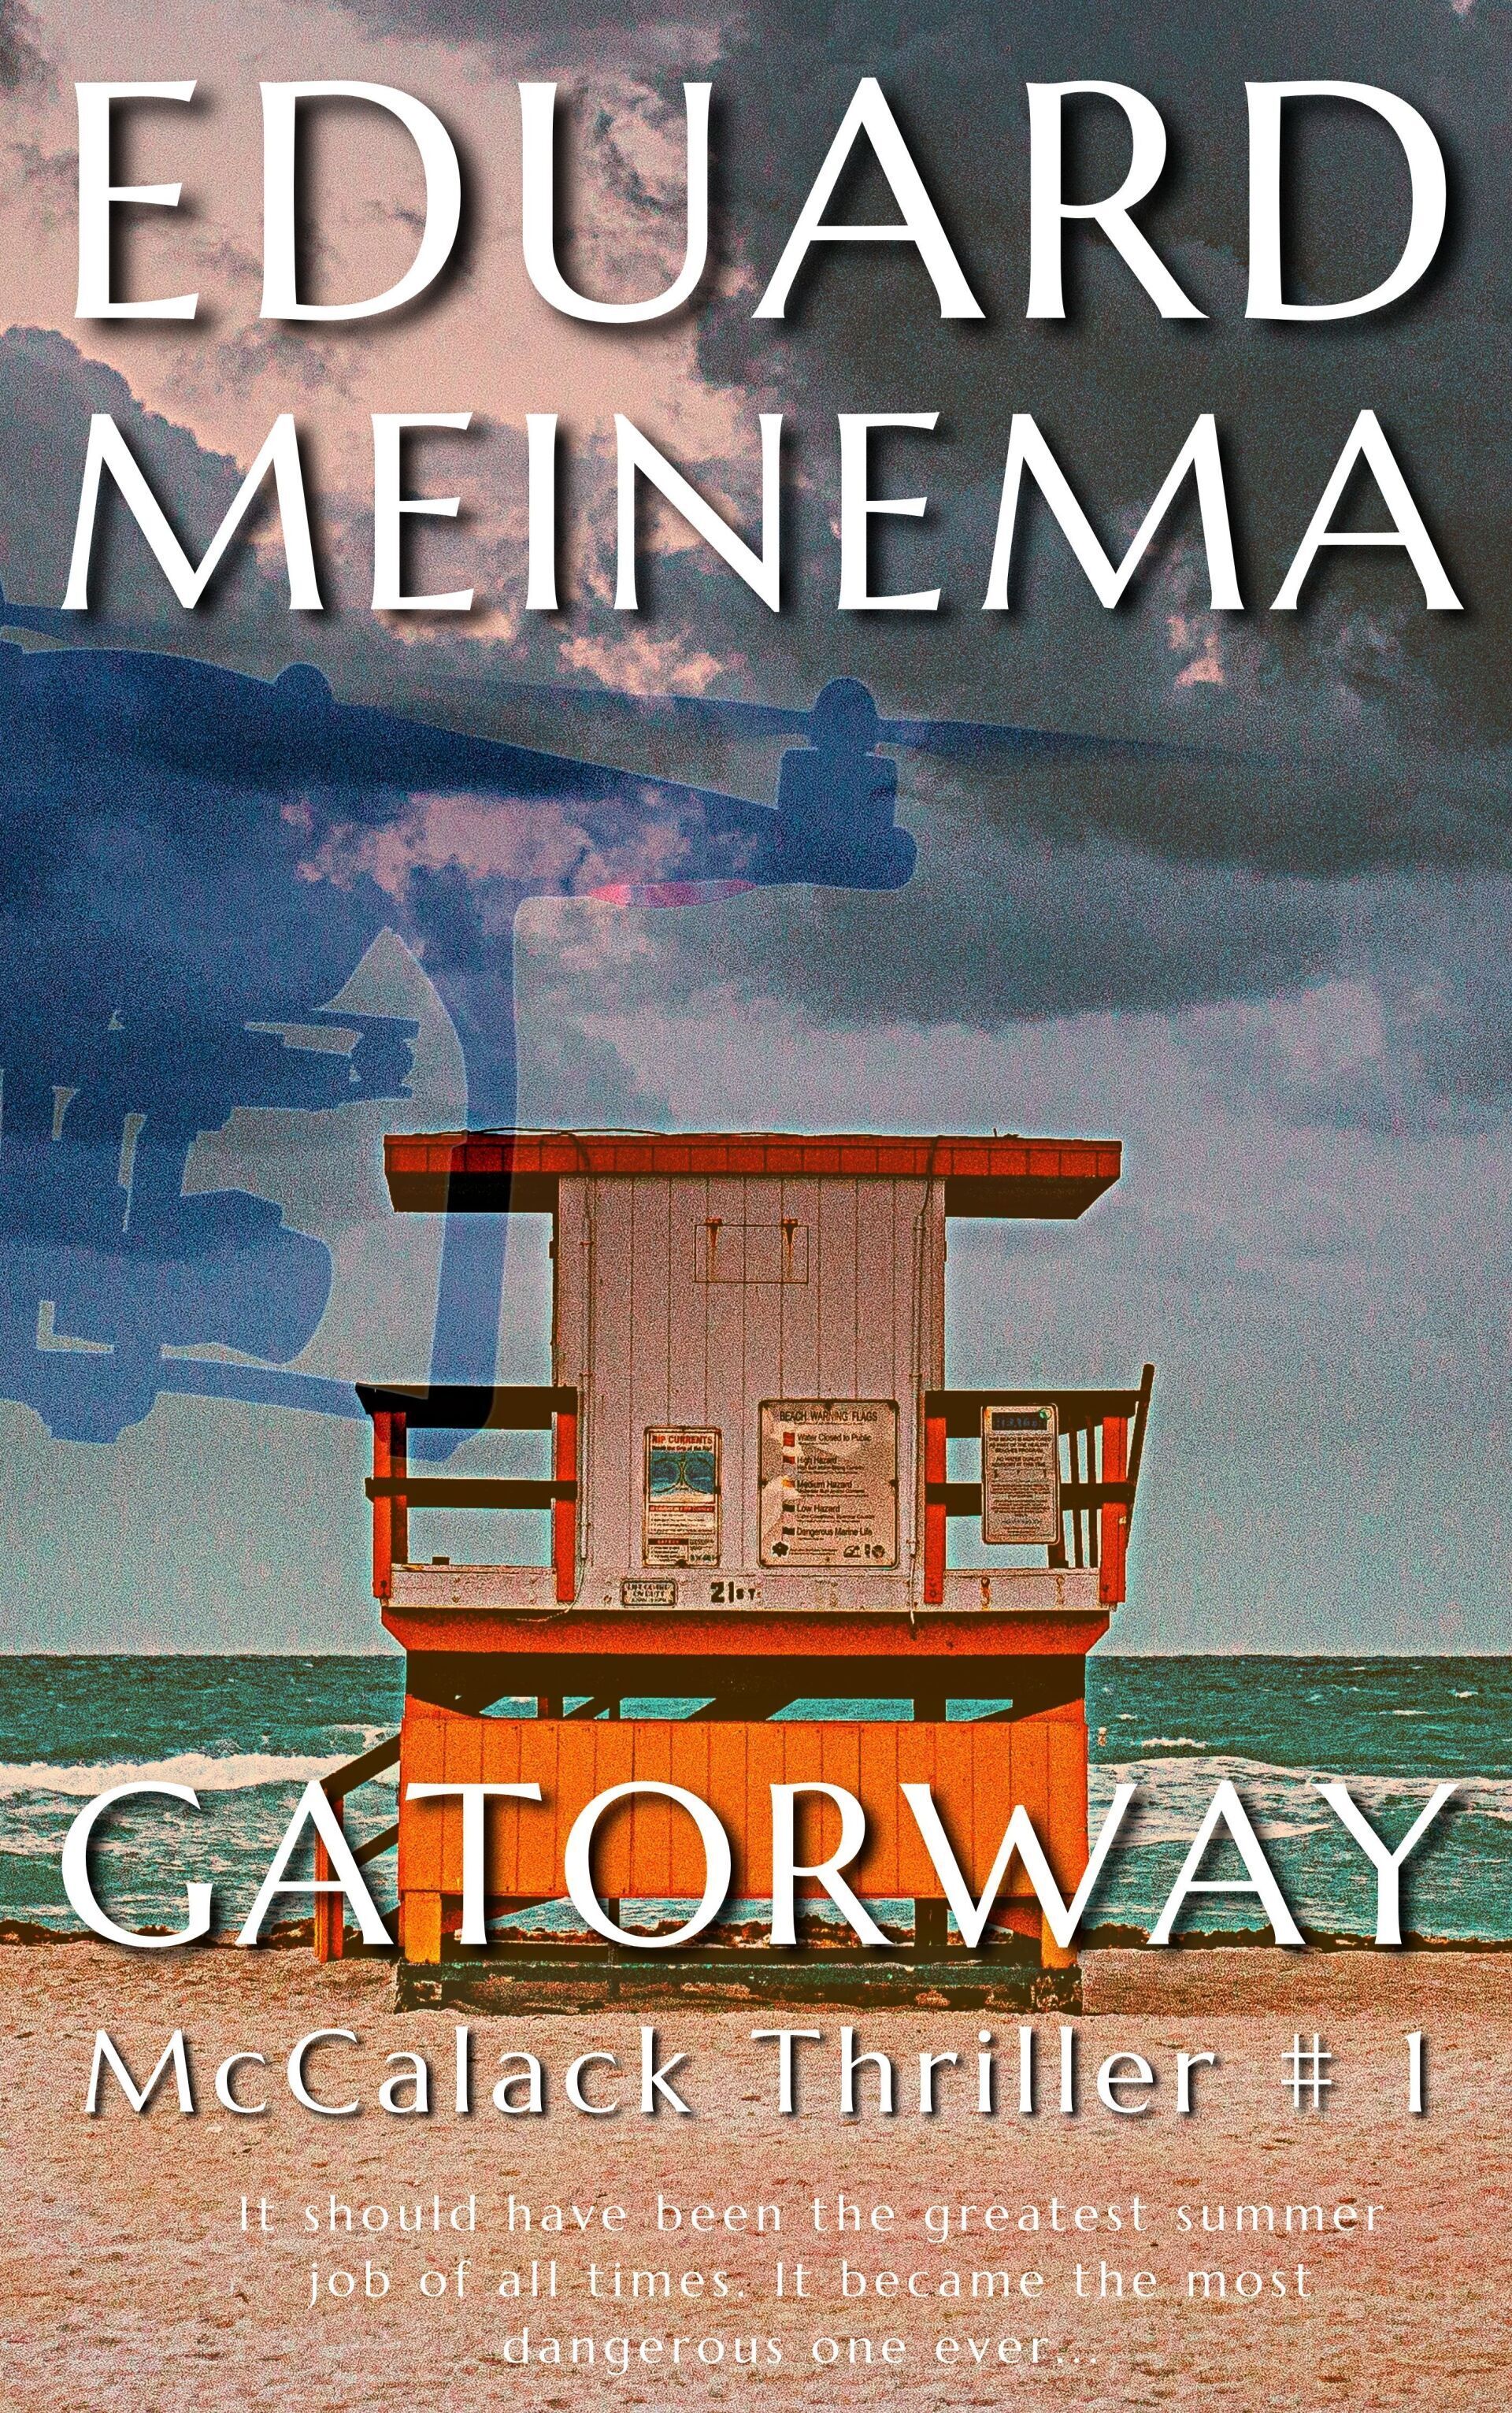 McCalack Thriller #1 Gatorway by Eduard Meinema